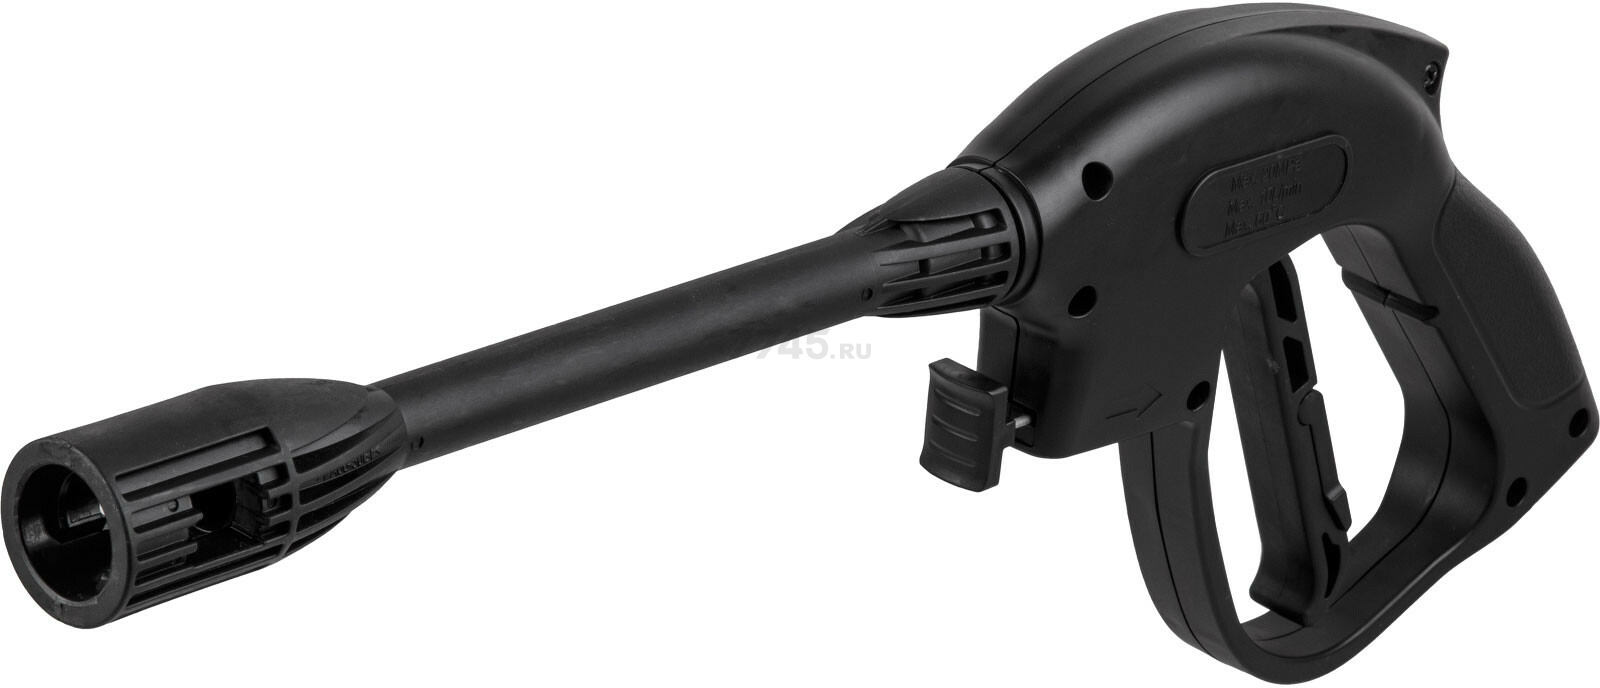 Пистолет распылительный для ECO HPW-1400/HPW-1600 (ECX2010-1)